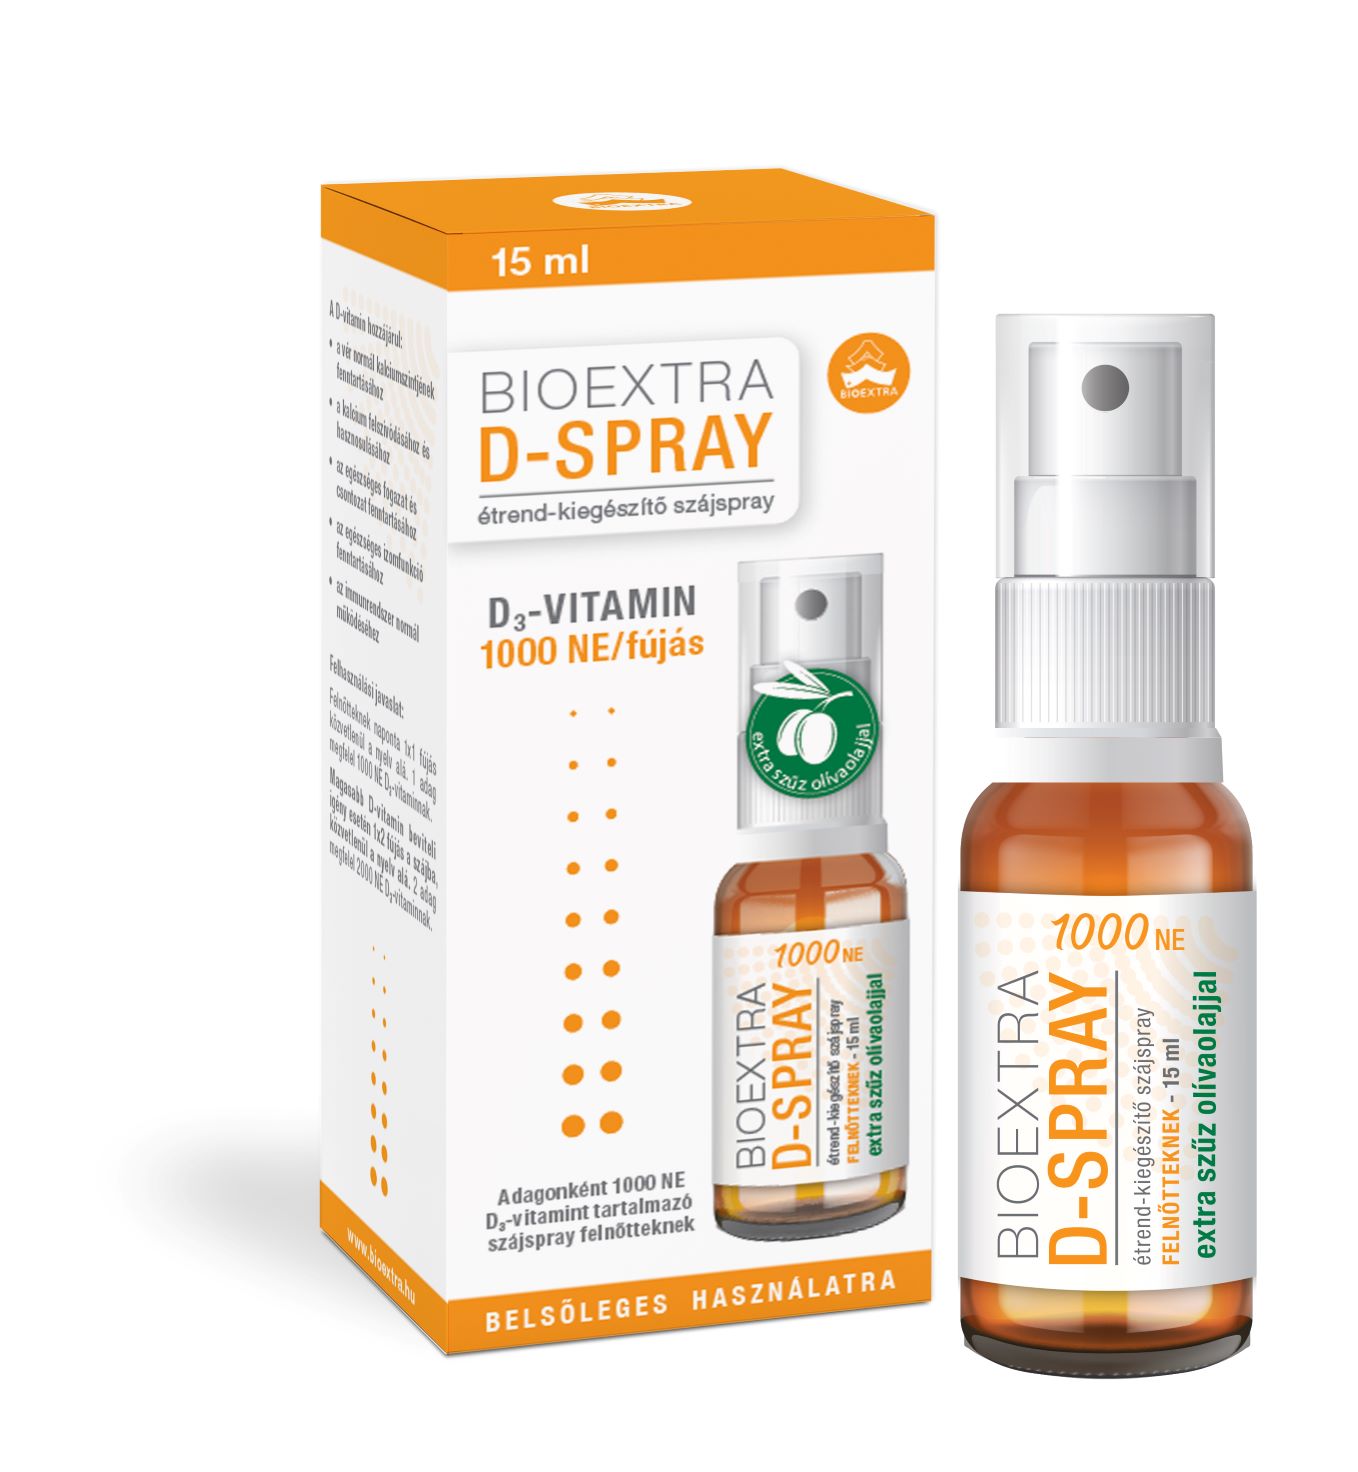 Bioextra D-Spray 1000 NE szájspray